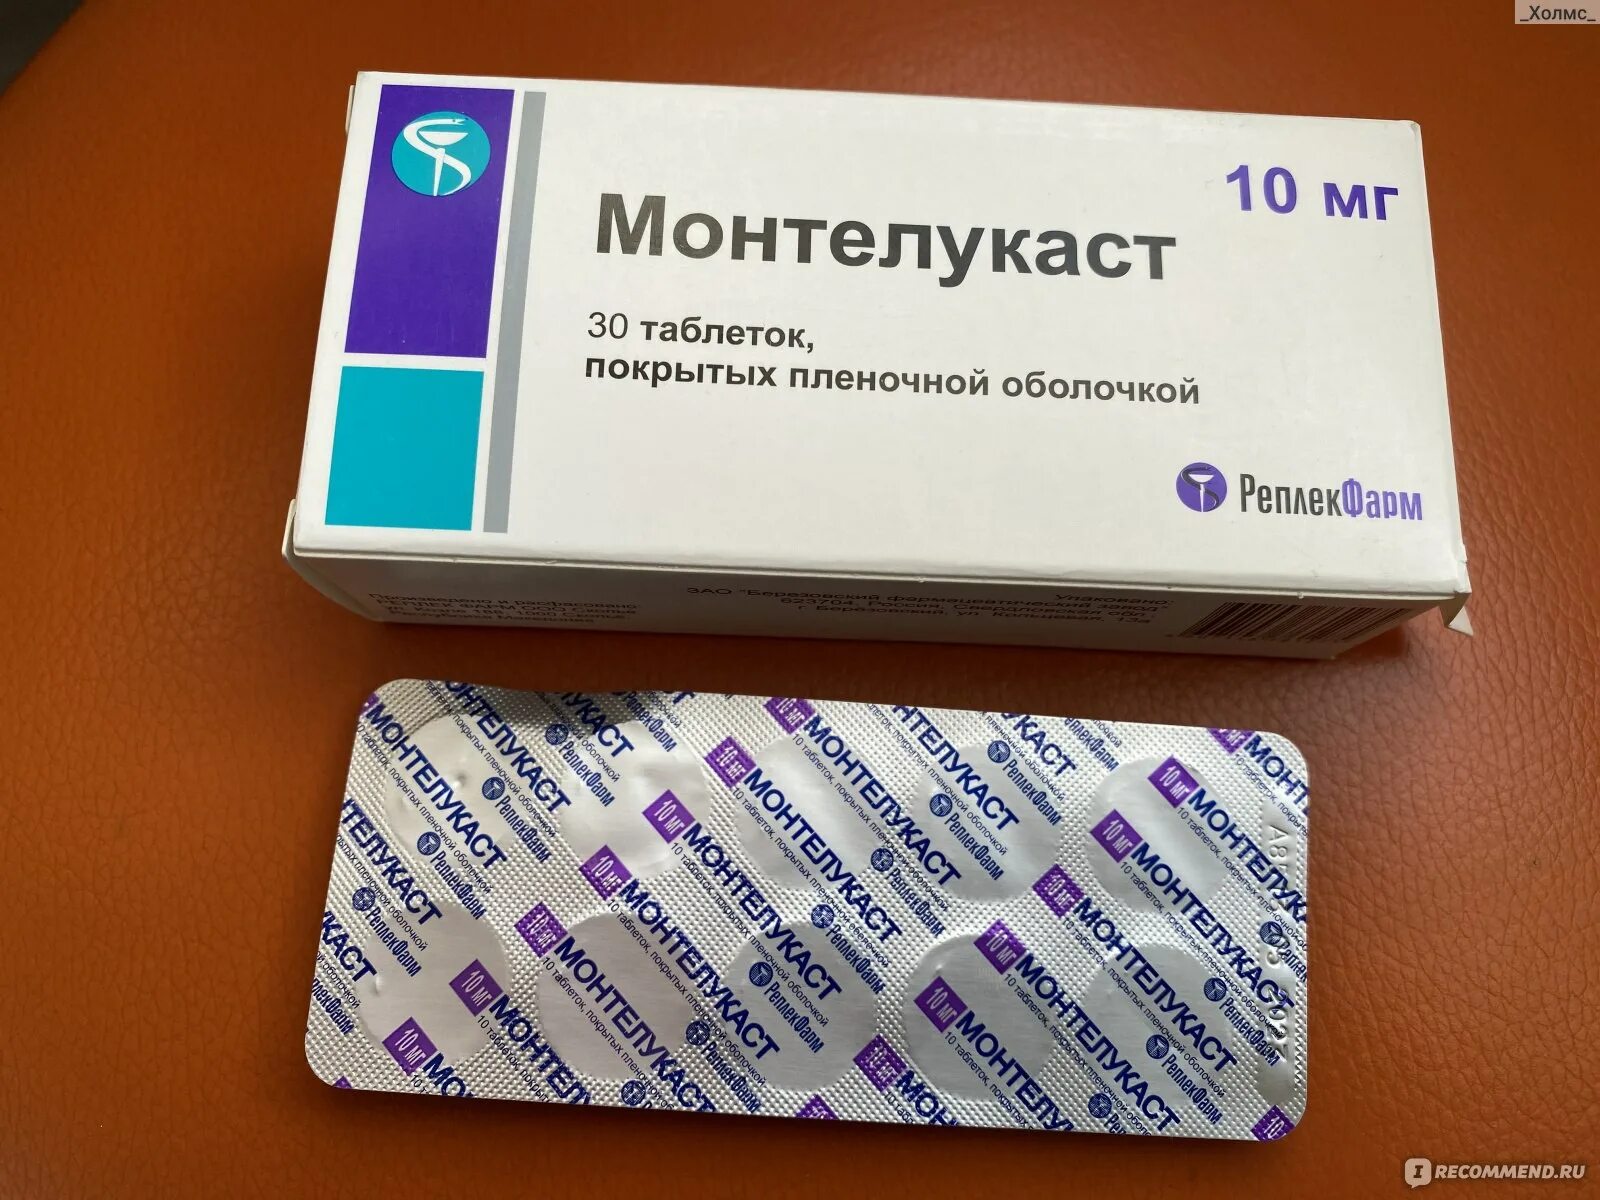 Монтелукаст 5 отзывы. Монтелукаст Реплекфарм. Монтелукаст таблетки. Монтелукаст монтелар. Лекарство от астмы монтелукаст.